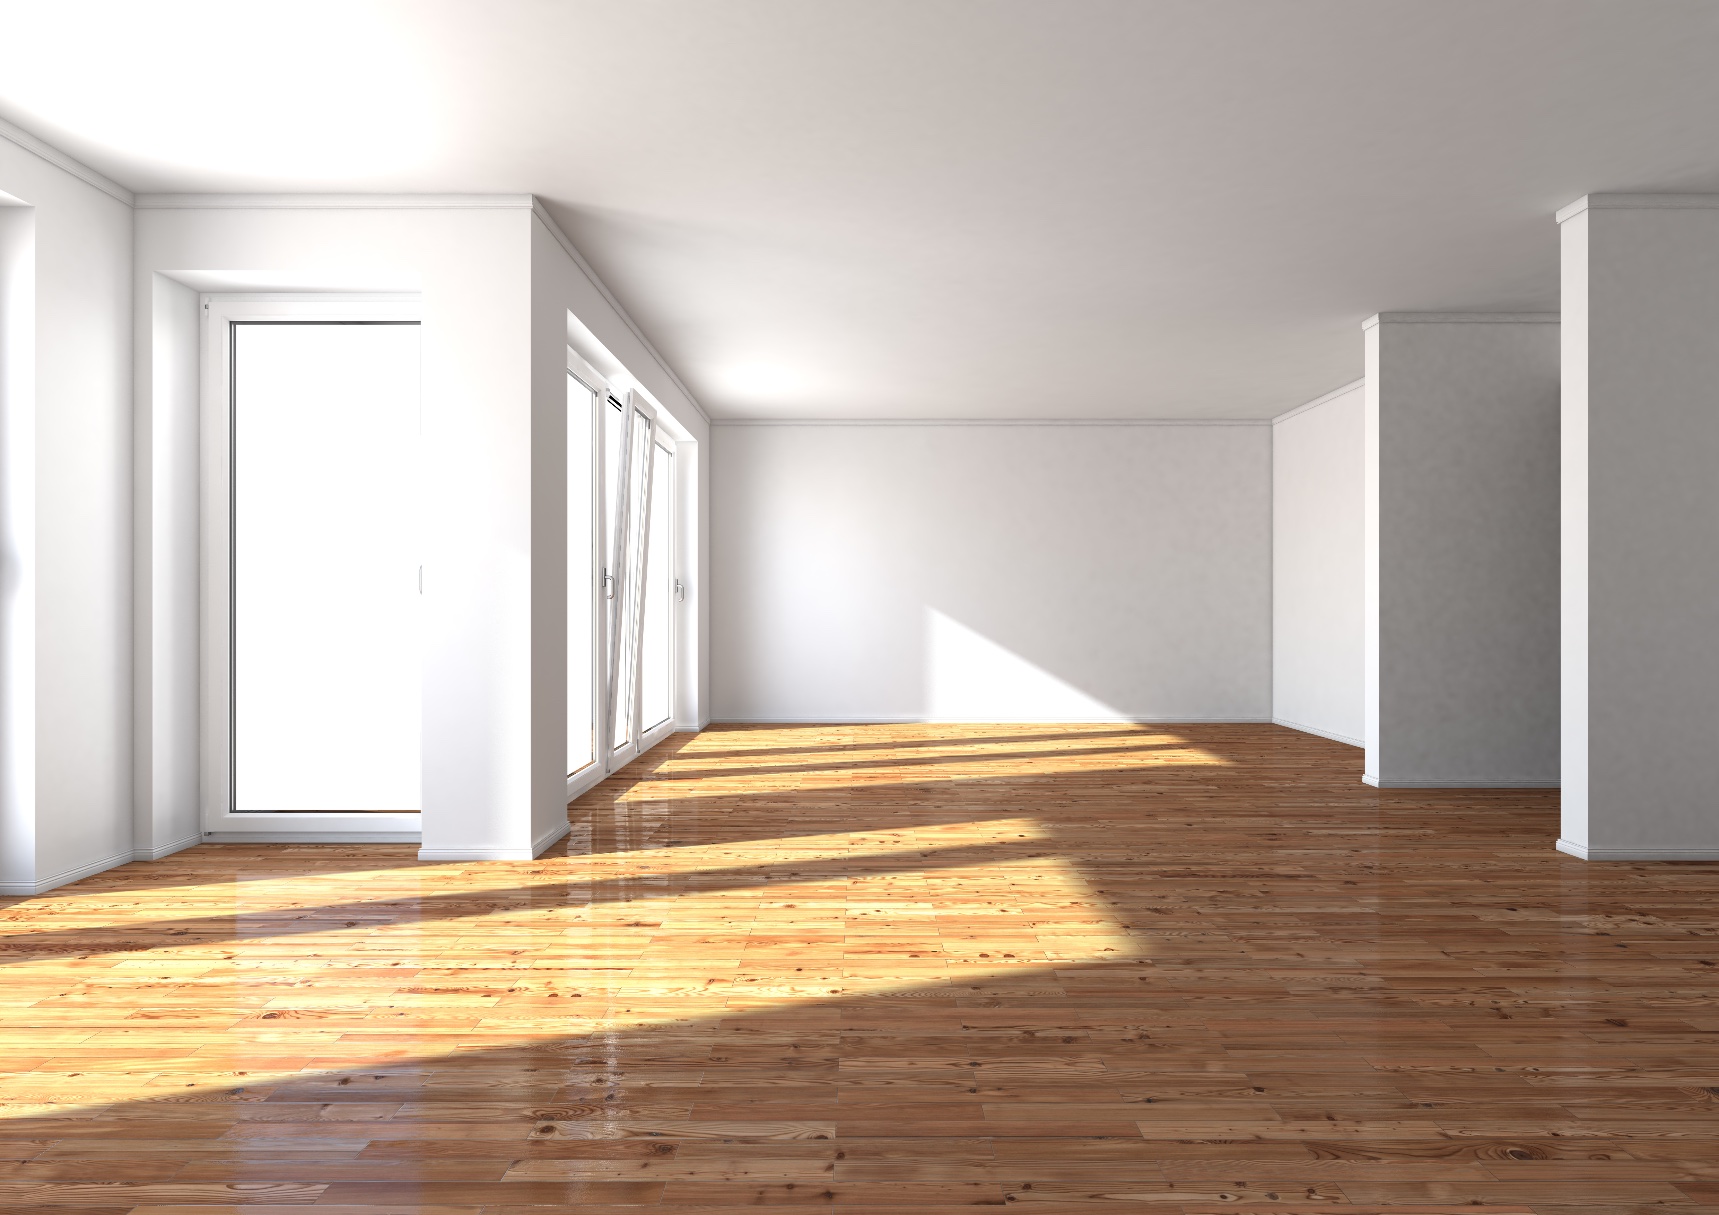 Ein schöner tapezierter Innenraum mit weißen Wänden und ein sauberer Boden